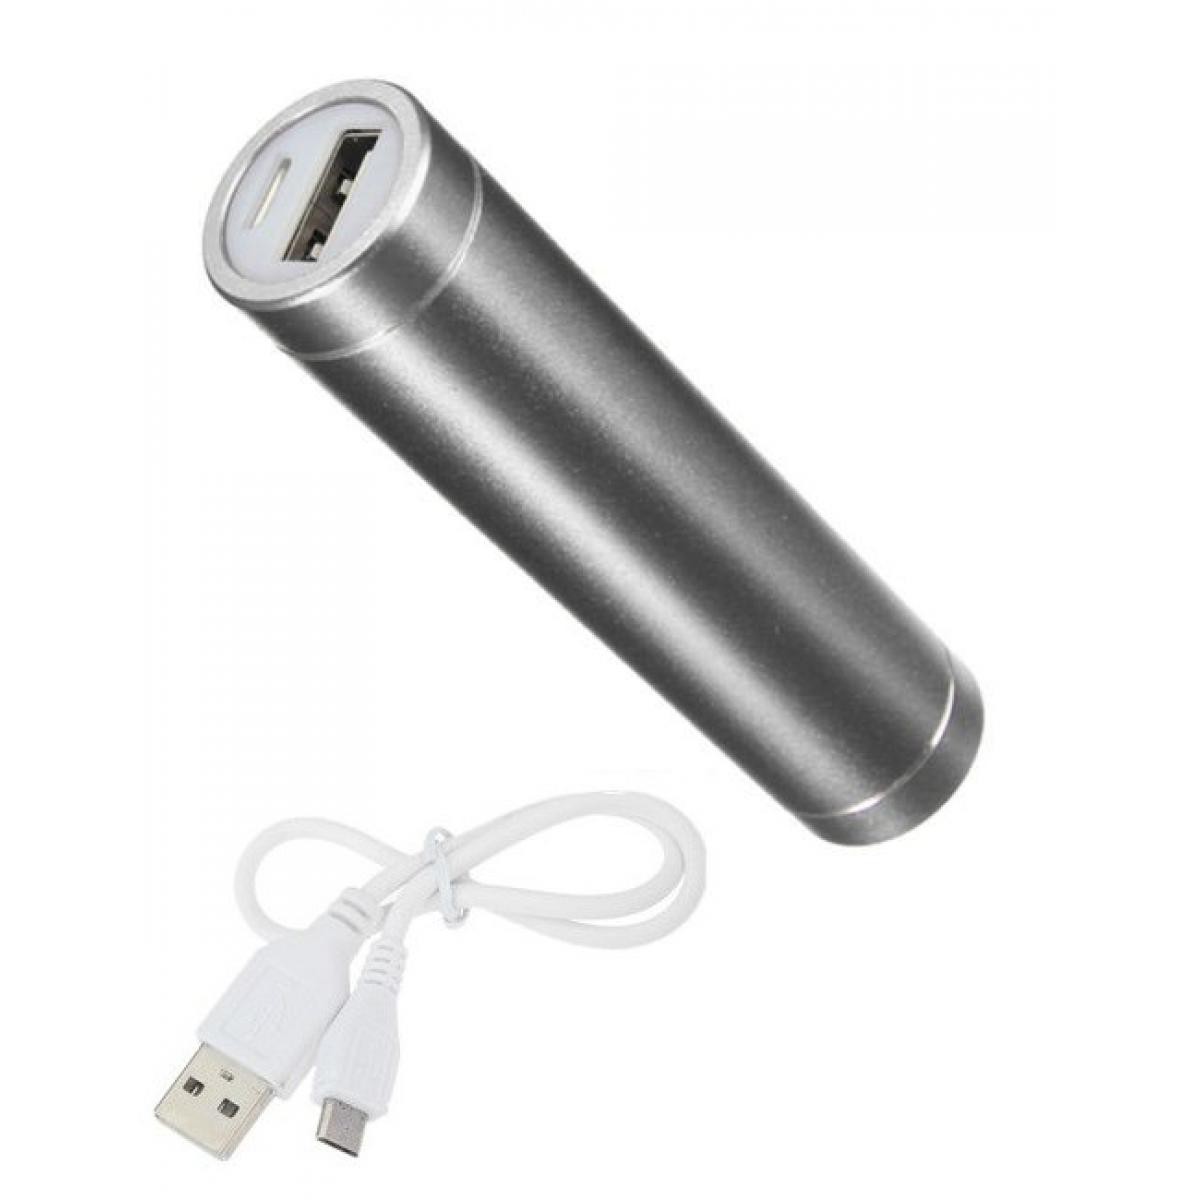 Shot - Batterie Chargeur Externe pour CROSSCALL ACTION-X3 Power Bank 2600mAh avec Cable USB/Mirco USB Secours Telephone (ARGENT) - Chargeur secteur téléphone